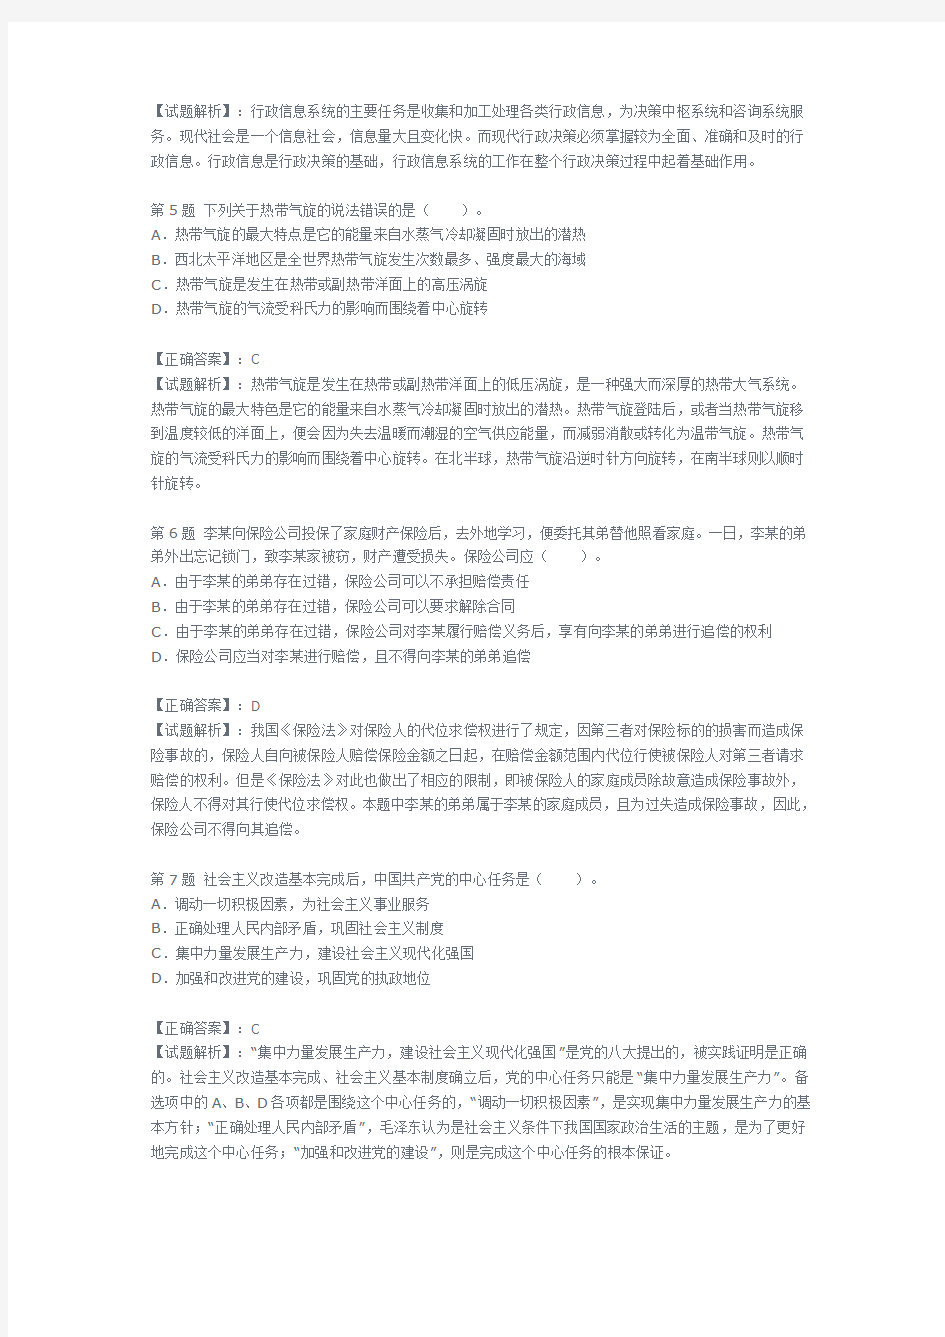 2013年河南省公务员考试公共基础知识真题及答案解析